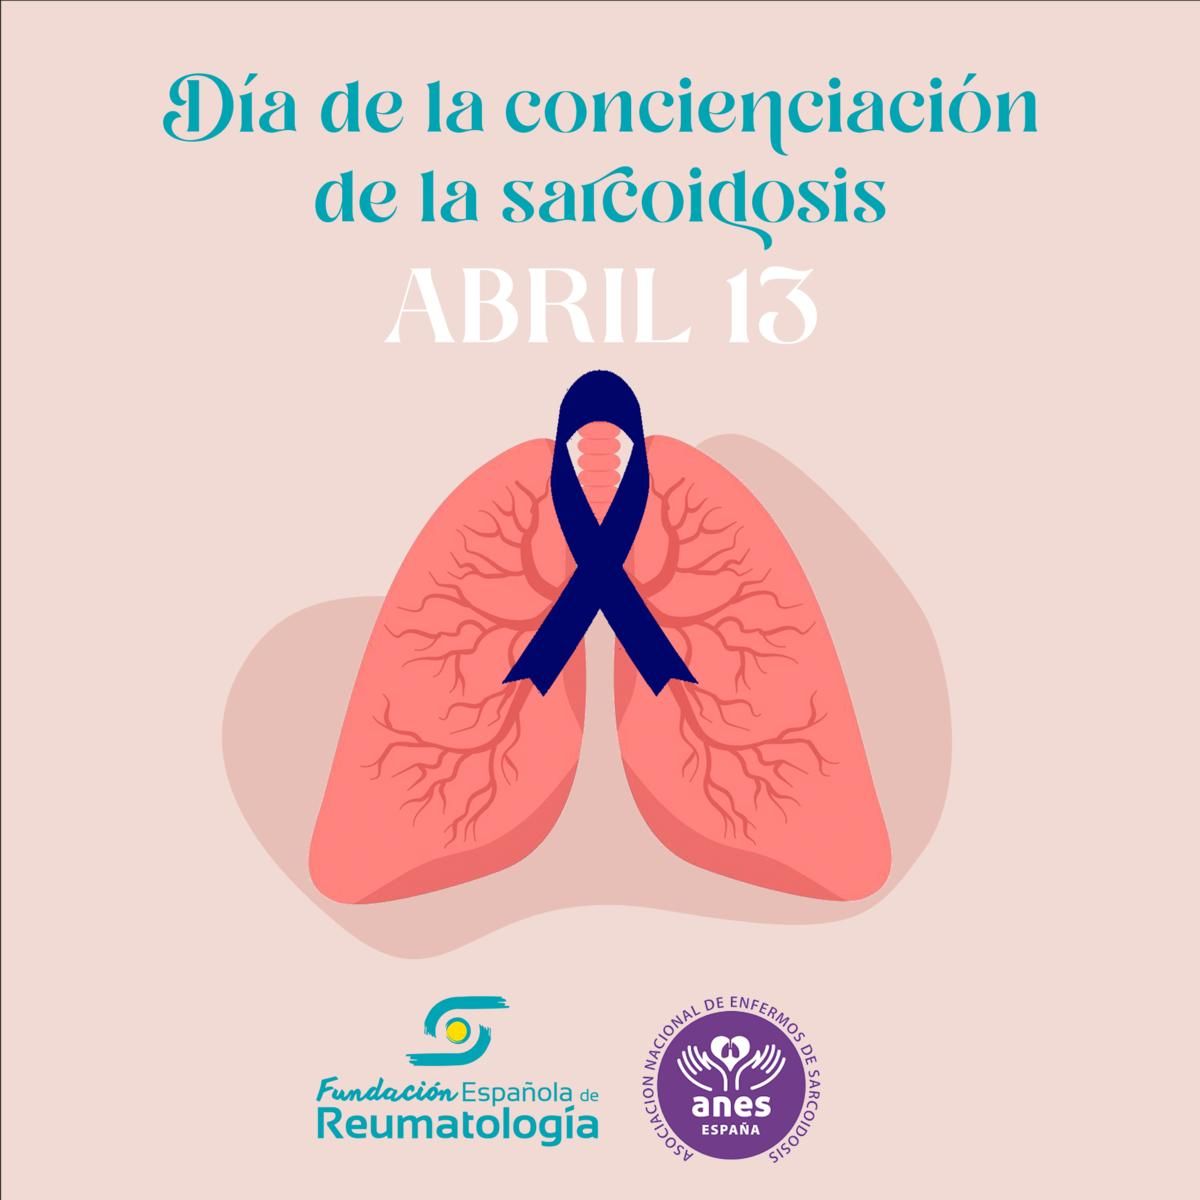 Según los datos que maneja la Sociedad Española de Reumatología, es una enfermedad minoritaria, cuya prevalencia se sitúa entre los 10 y los 20 casos por 100.000 habitantes